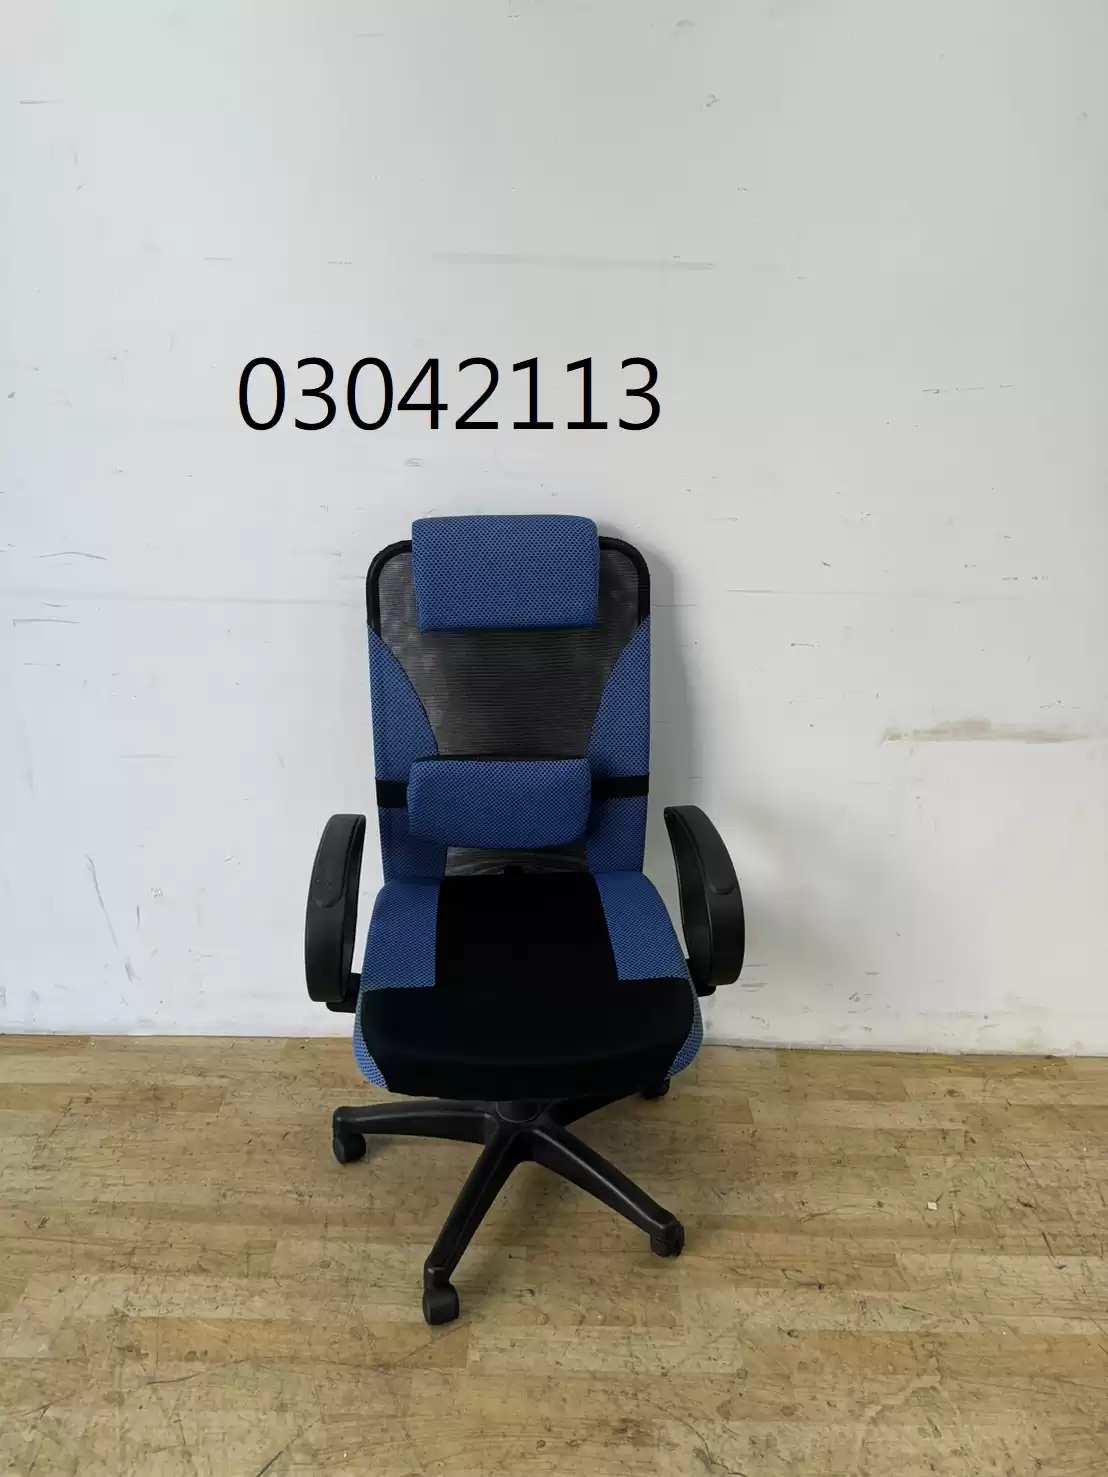 【弘旺二手家具生活館】二手/中古 藍色辦公椅 OA椅 辦公椅 電腦椅 -各式新舊/二手家具 生活家電買賣